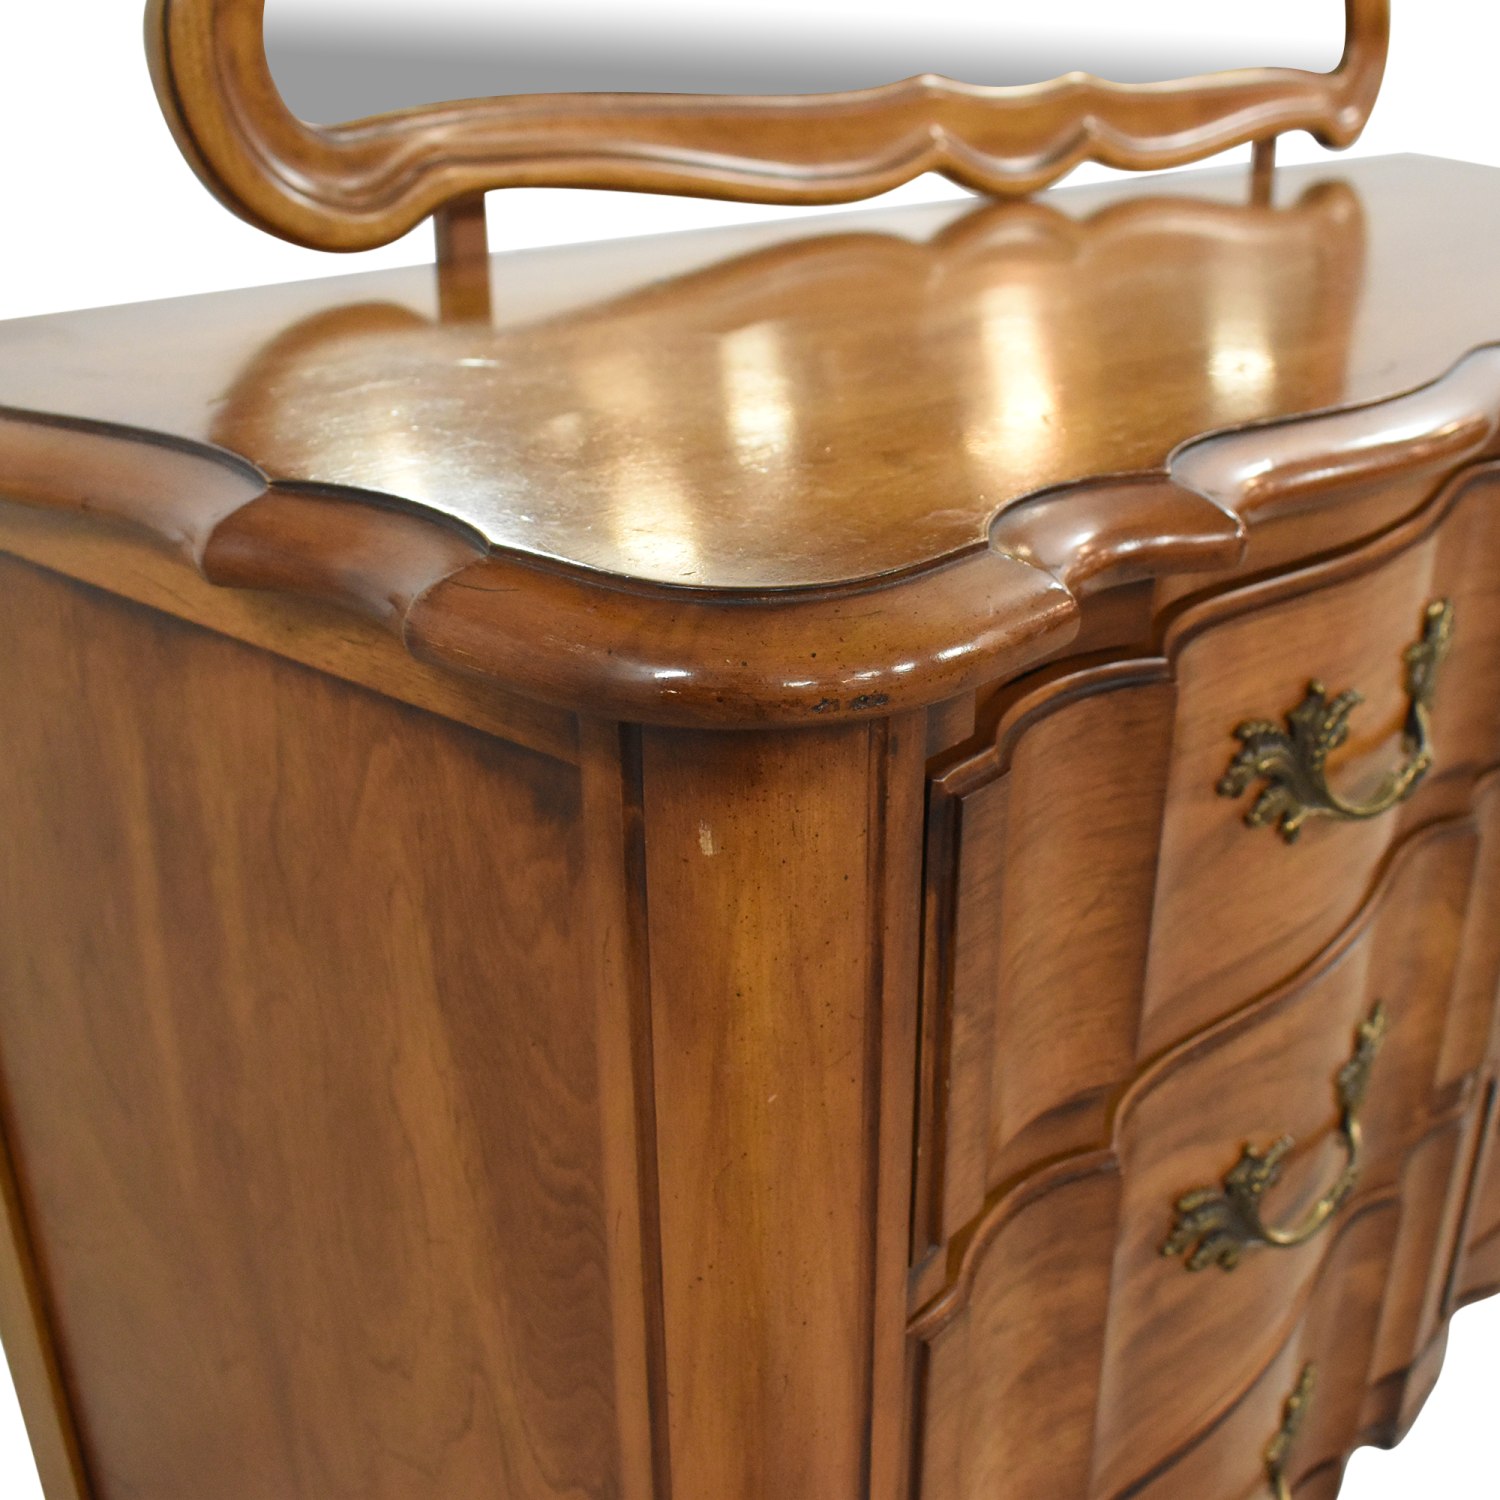 Louis Philippe - Dresser Mirror - Atlantic Fine Furniture Inc.